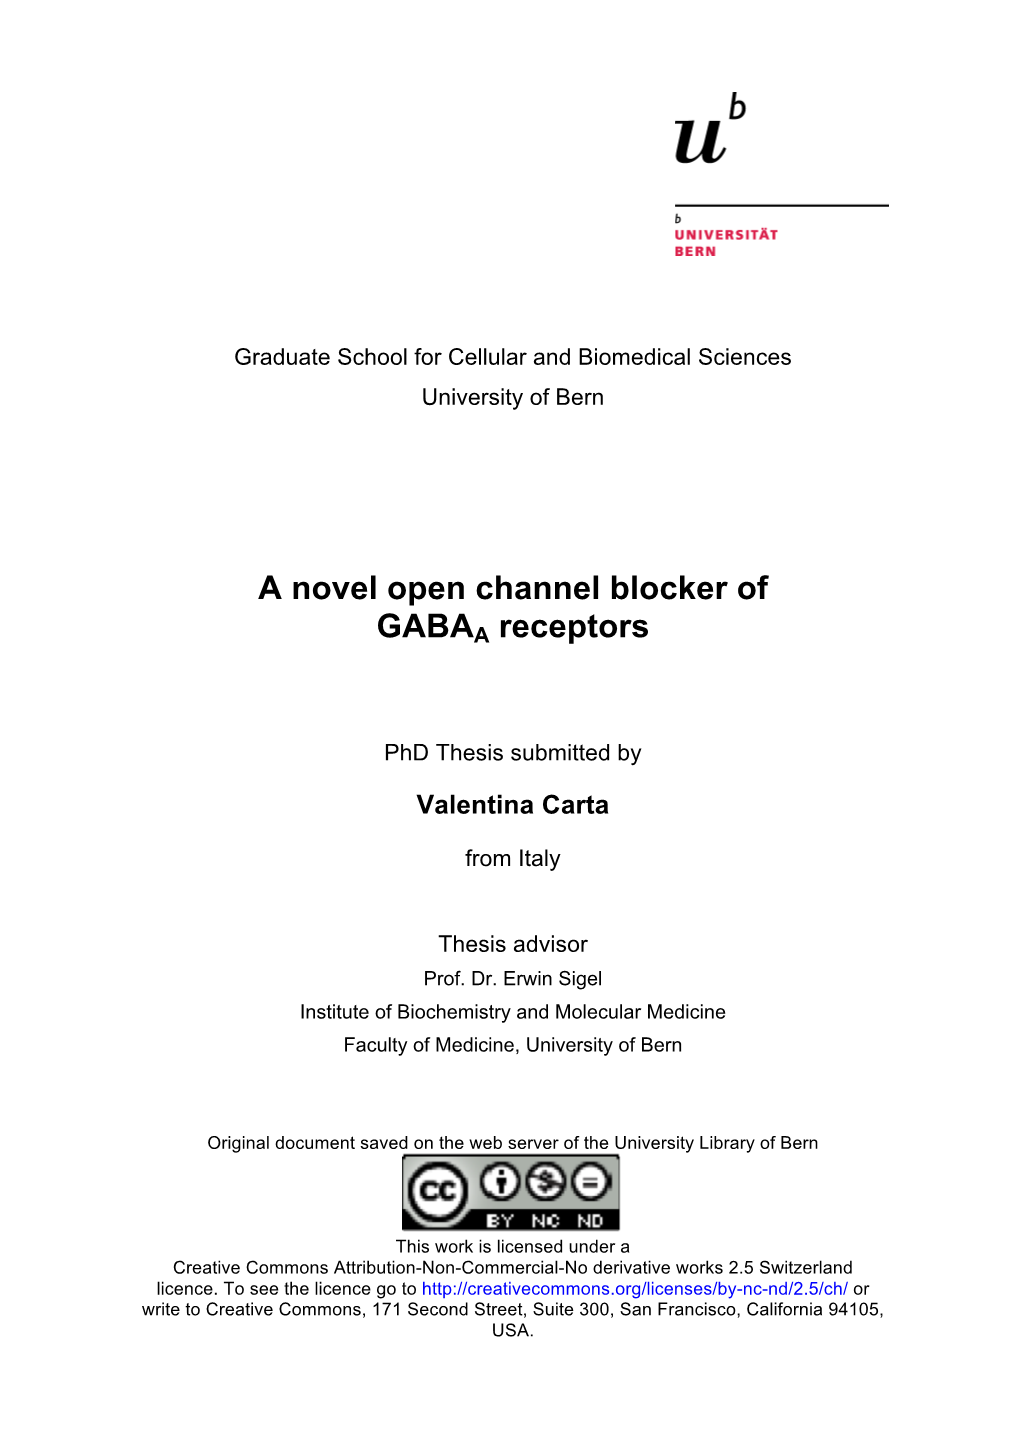 A Novel Open Channel Blocker of GABAA Receptors